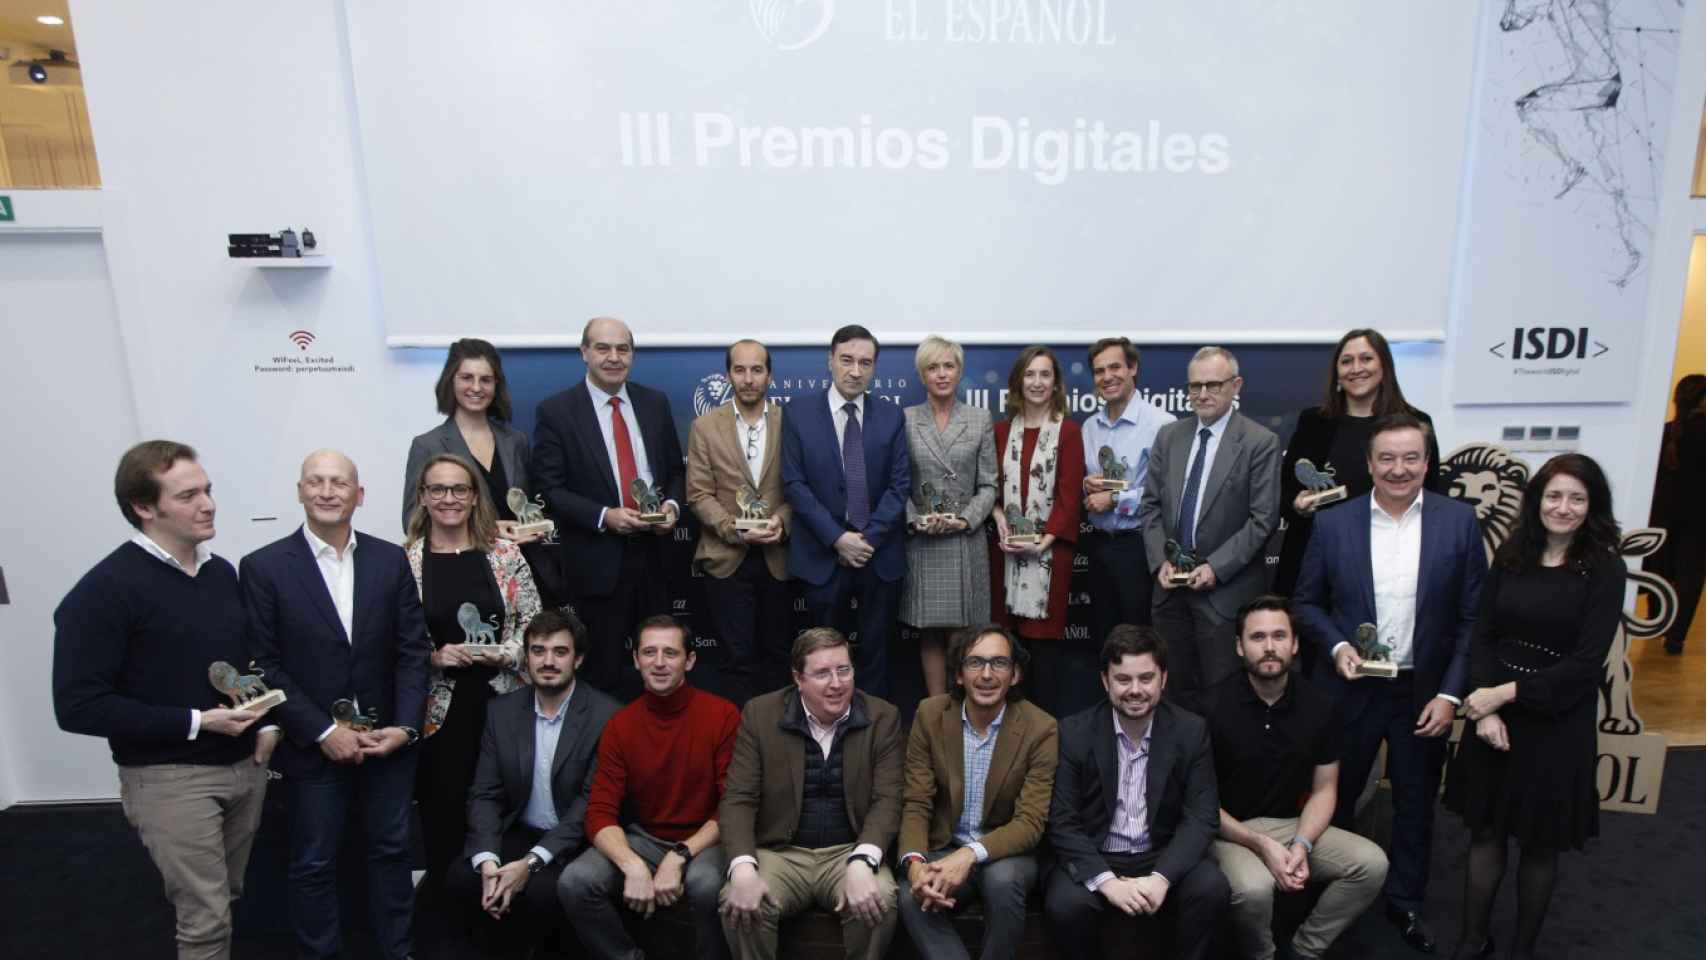 III Premios Digitales EL ESPAÑOL Galardonados